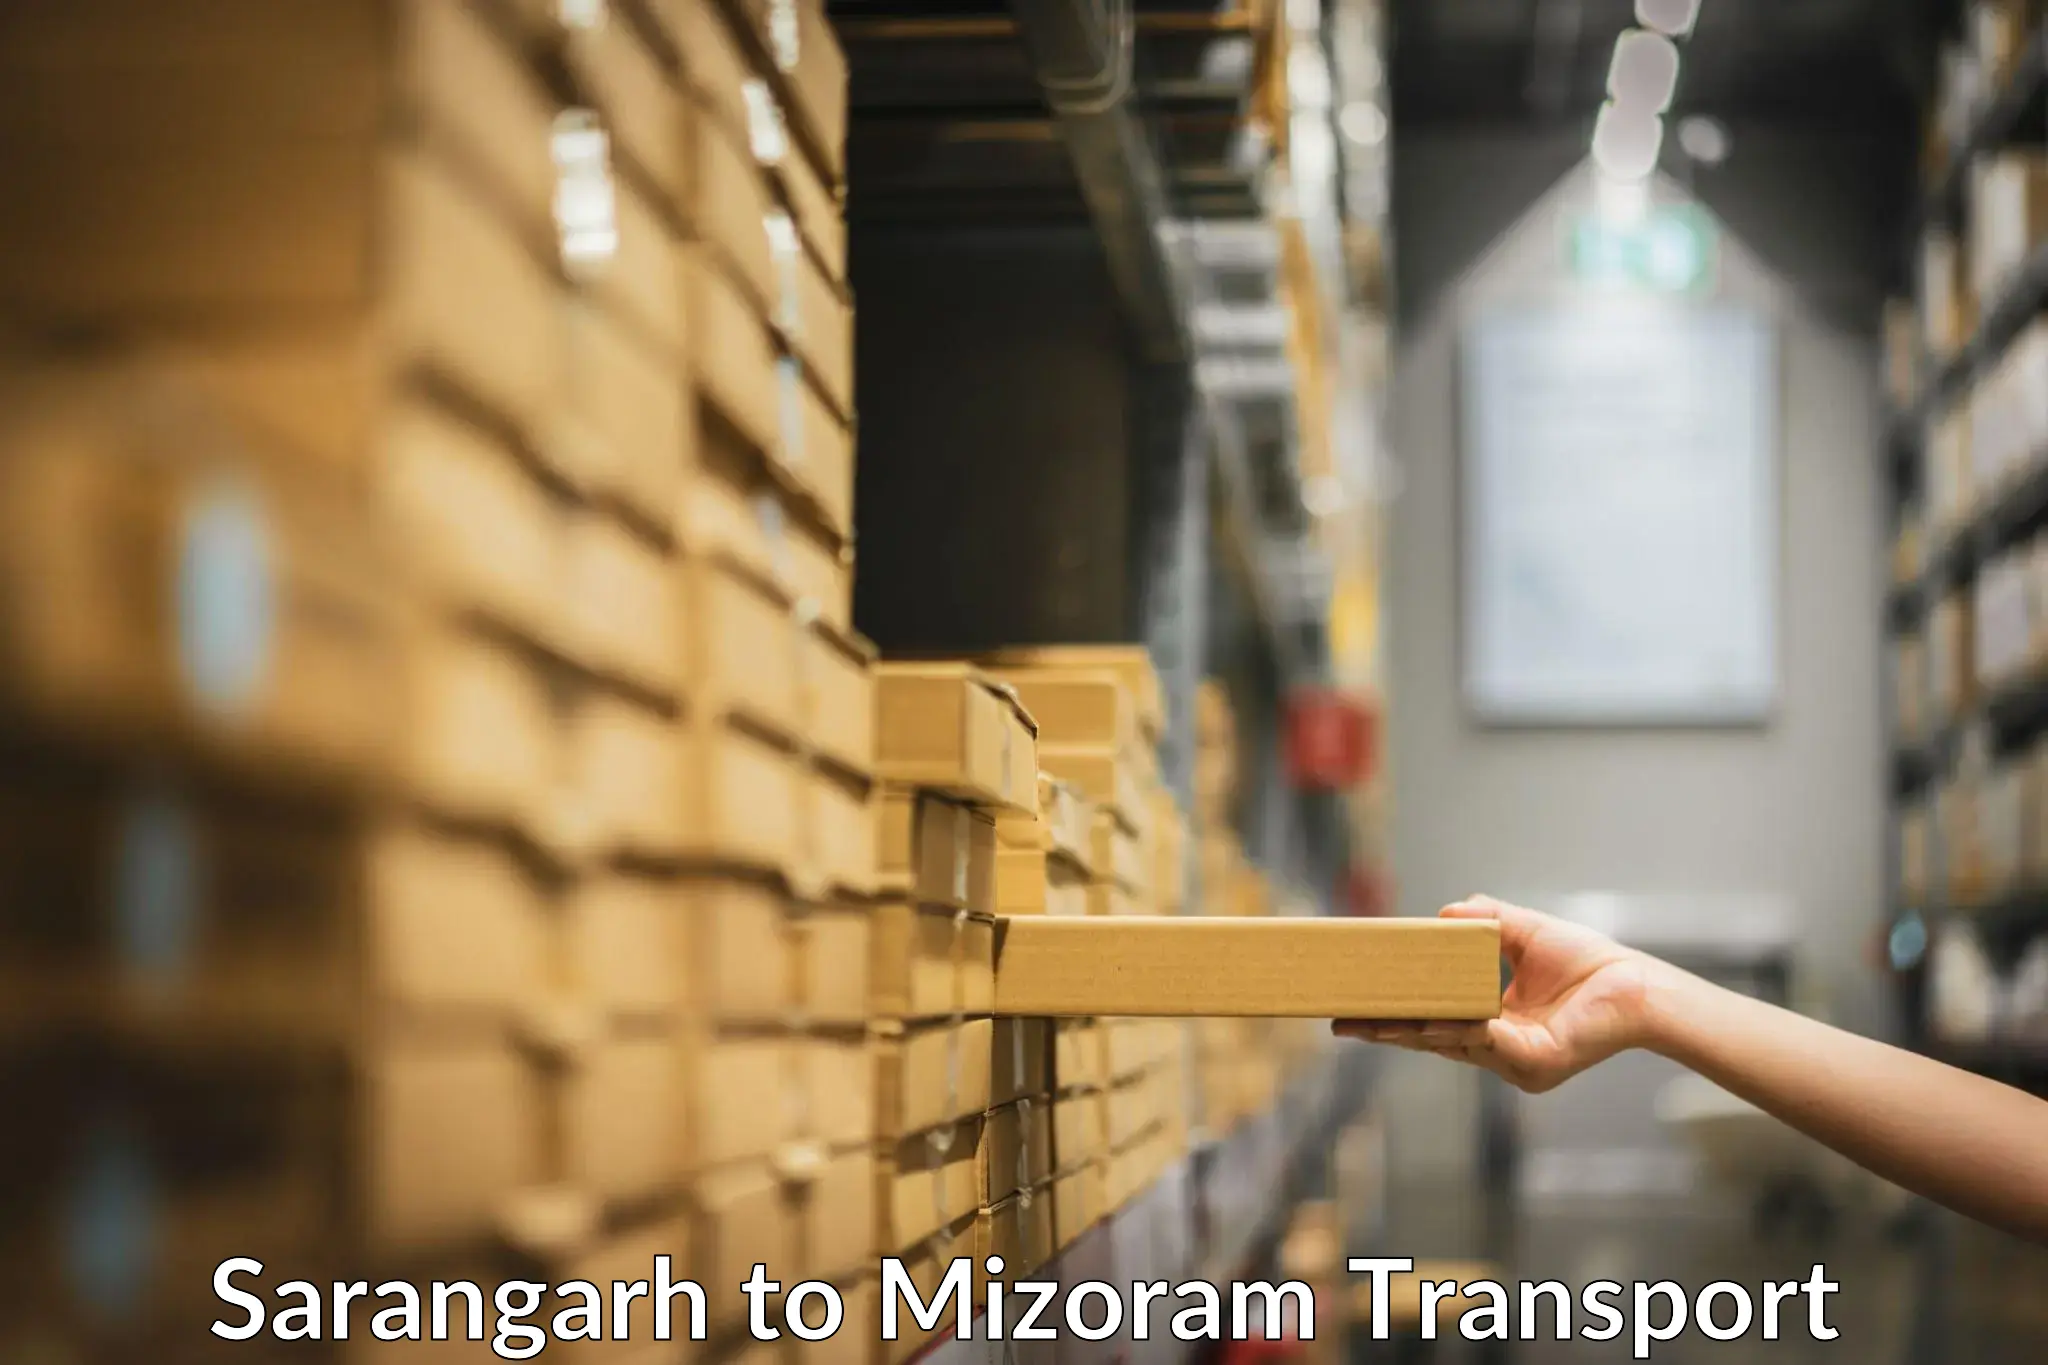 Nearby transport service Sarangarh to Mizoram